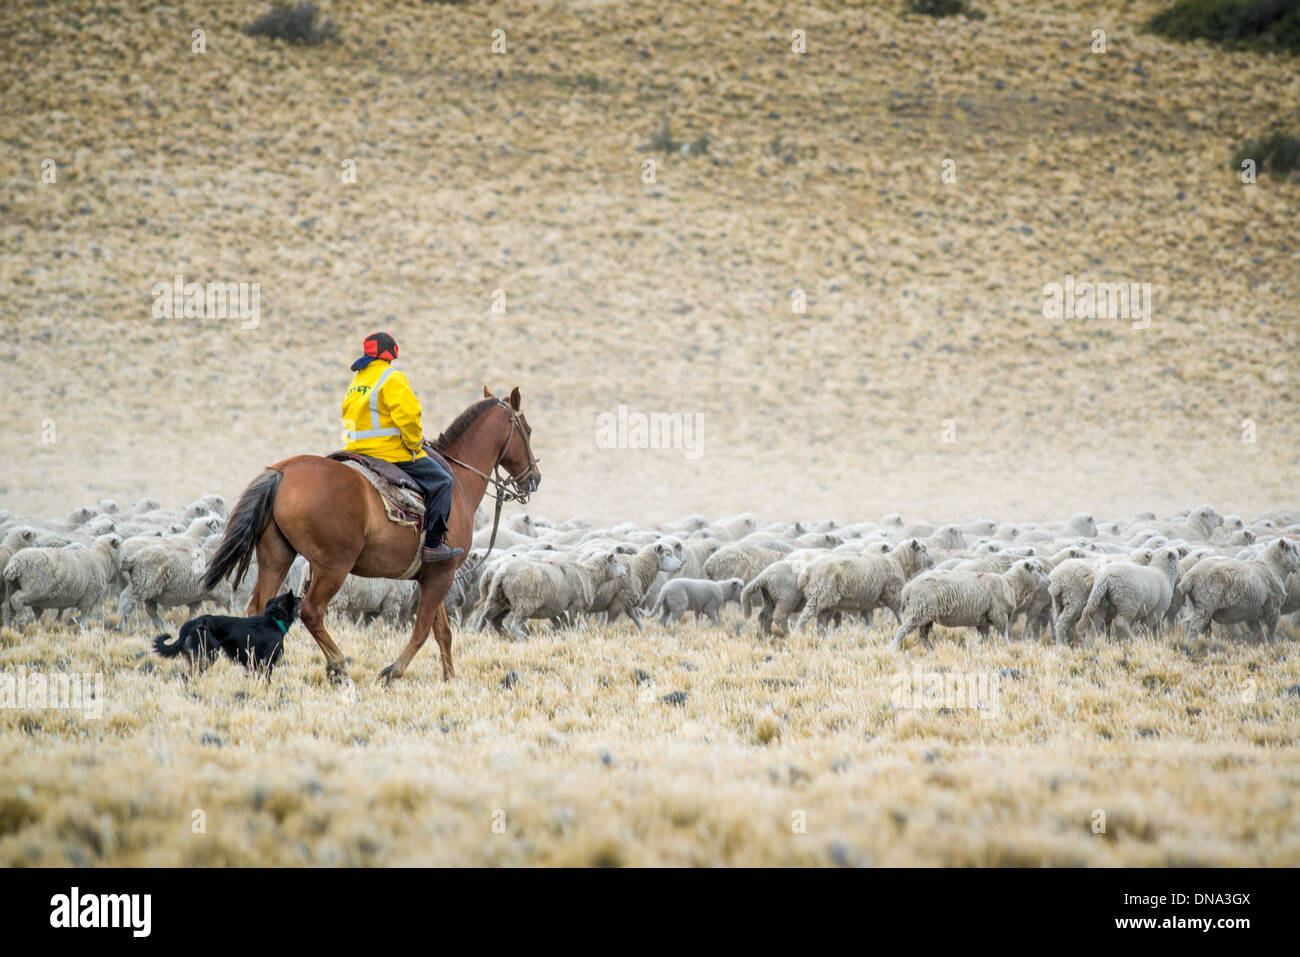 Gaucho Herding on Horseback with Sheep Dog, Argentina Stock Photo